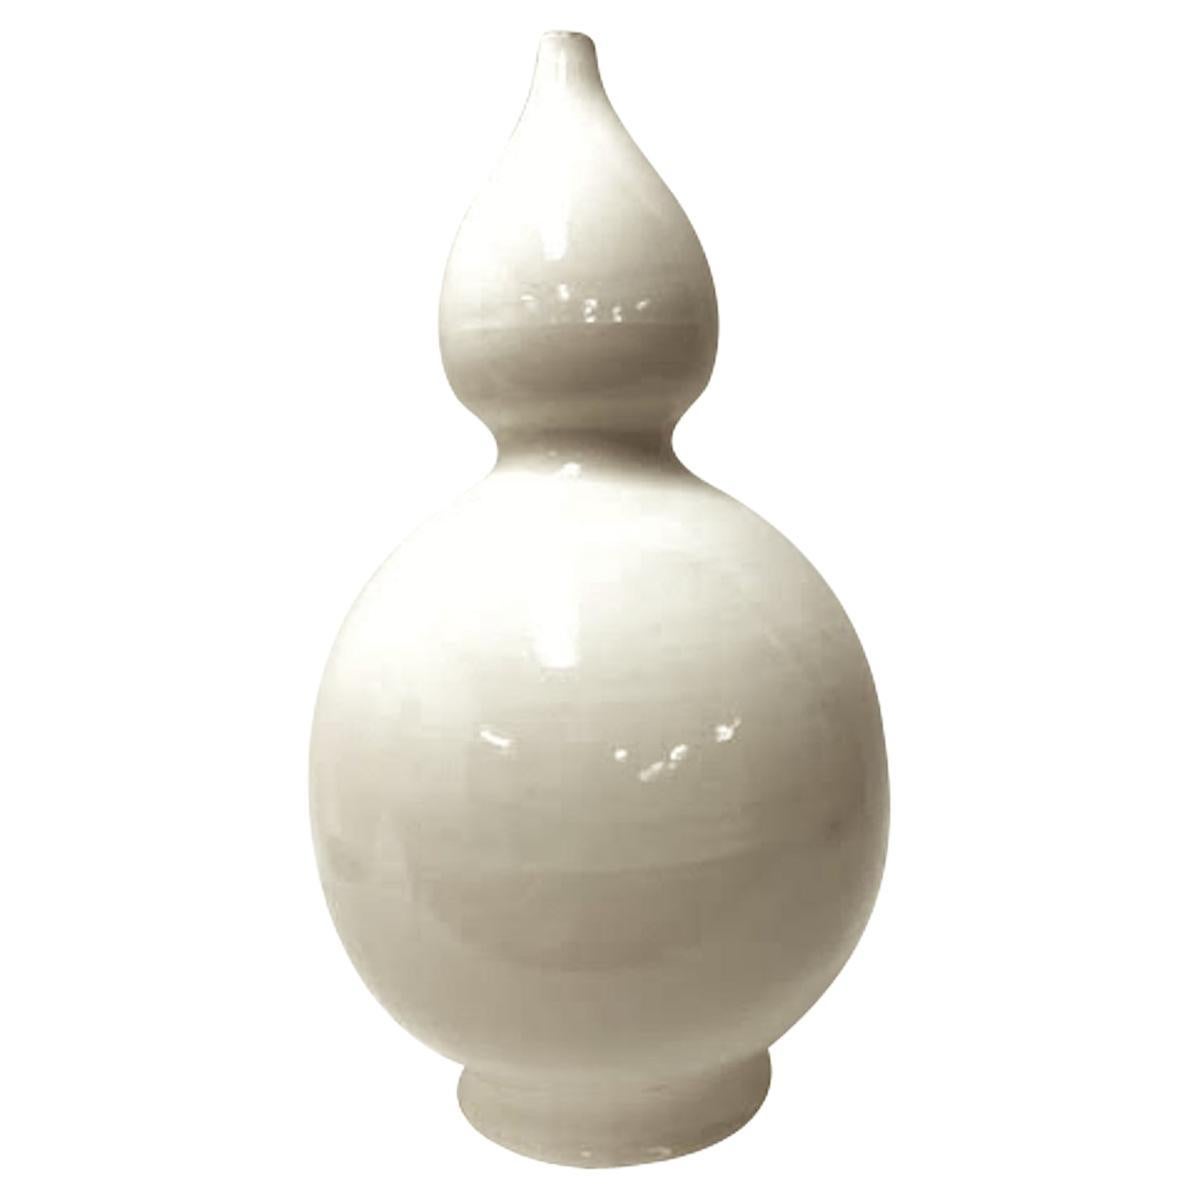 Cream Classic Shaped Ceramic Vase, China, Contemporary 1